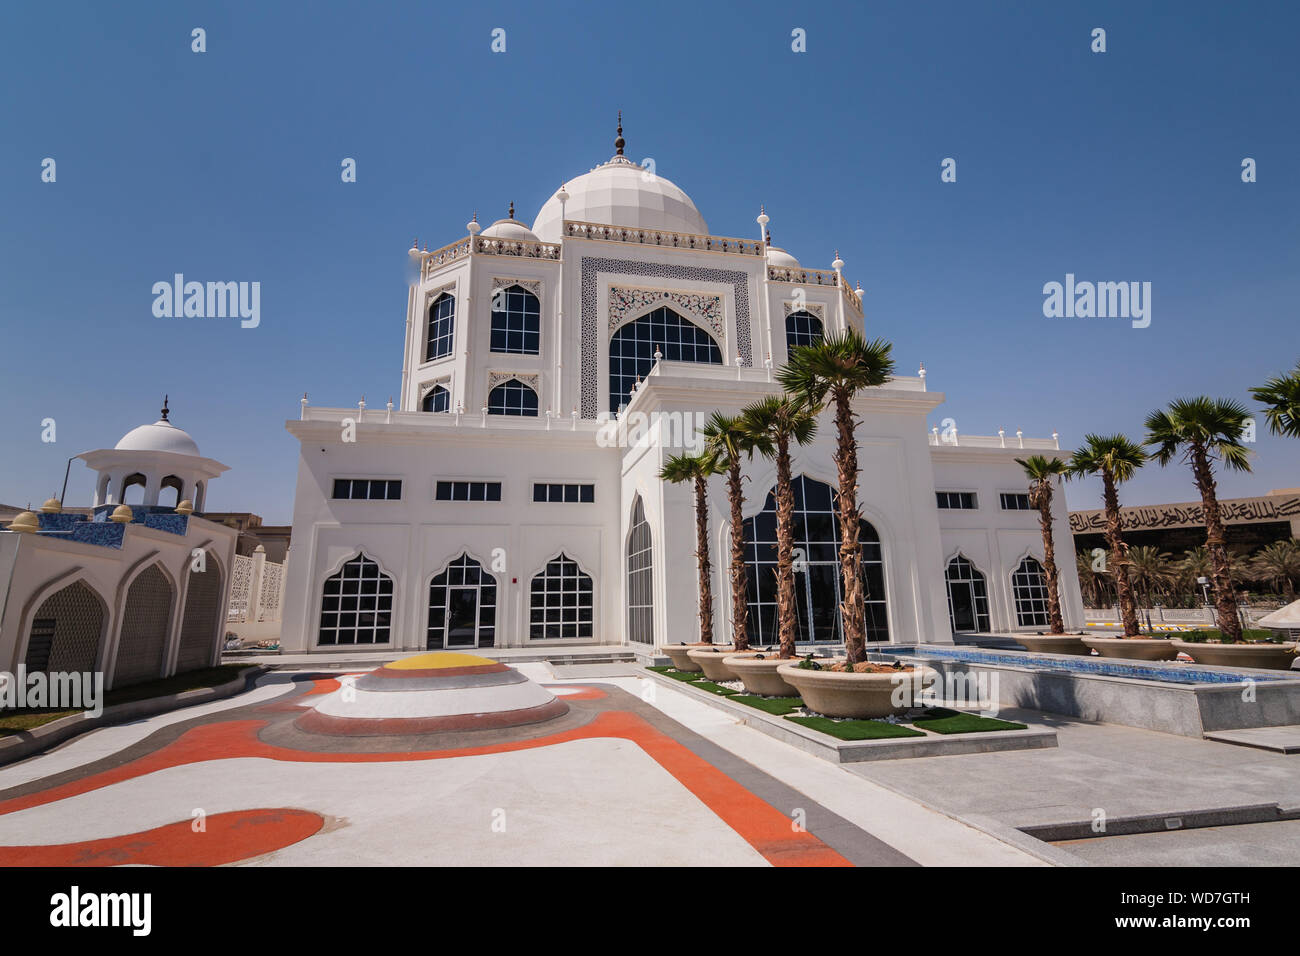 Das Büro von Abdul Nasser Abdulrahman Al-Suhaibani & Partner Anwaltskanzlei, ein Beispiel für die opulenten im arabischen Stil Architektur in Riad Stockfoto